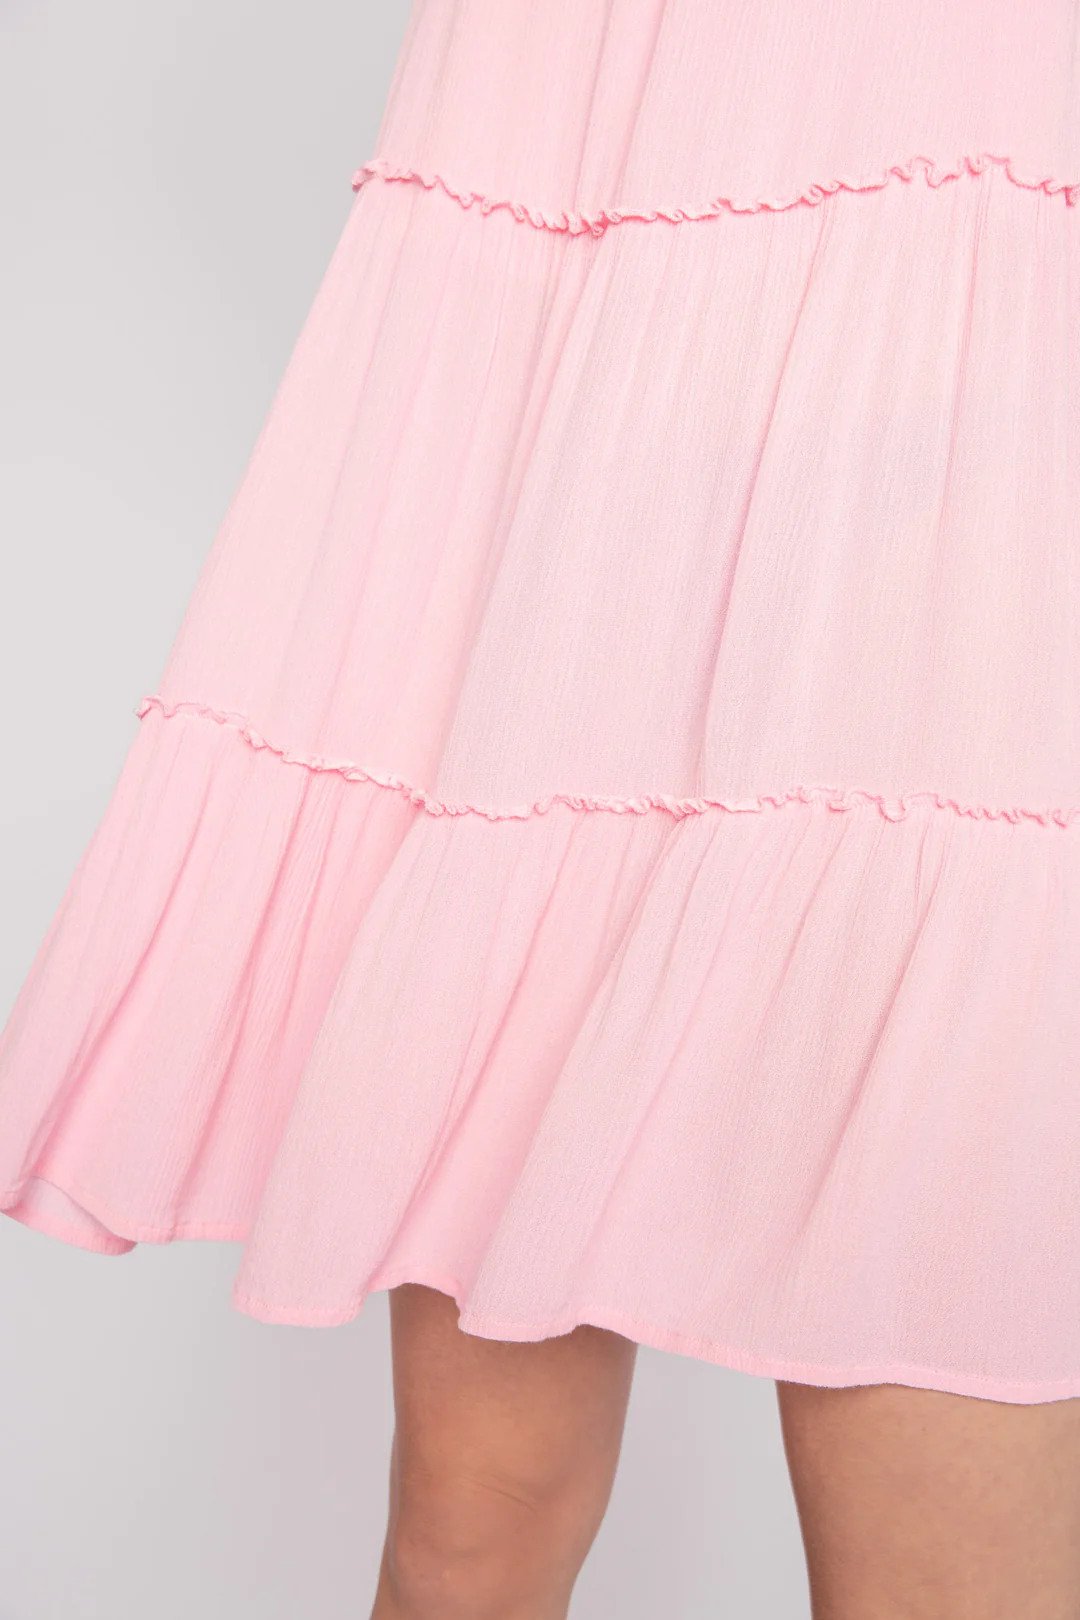 Limeade dress True Pink Skirt Detail.